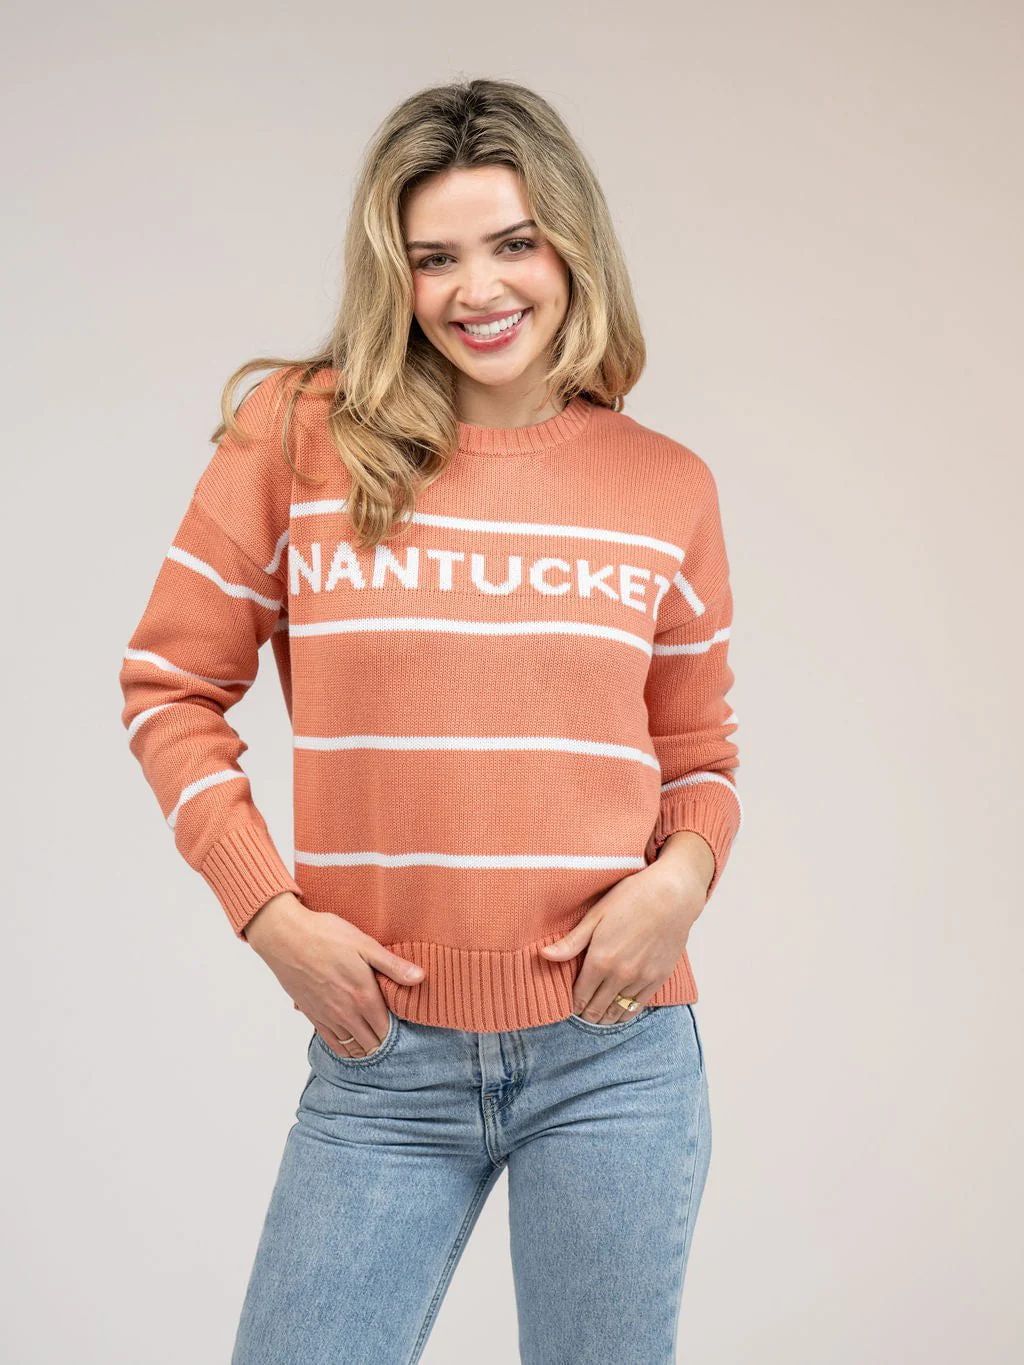 Nantucket Sweater in Nantucket Red Stripe | Beau & Ro